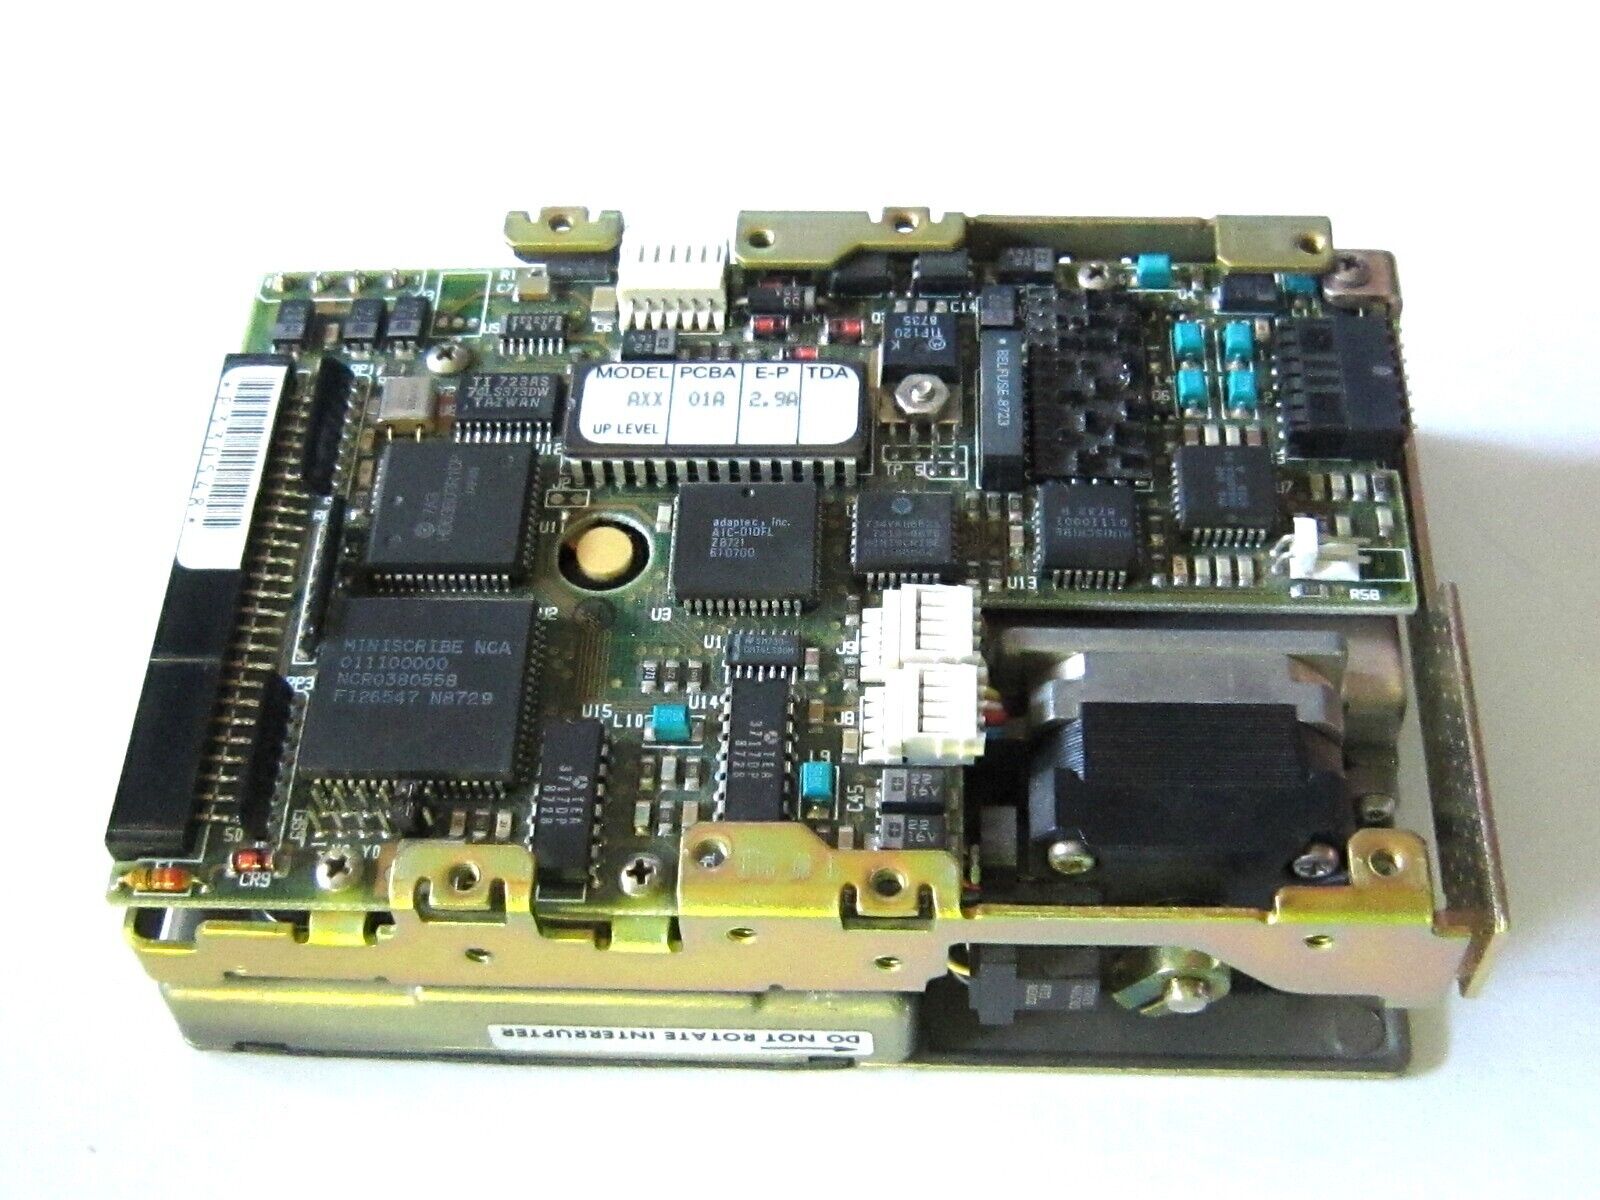 Apple HP DRIVE SCSI MINISCRIBE 8425S/& APPLE/Model AXX PCBA-01A E-P2.9A TDA